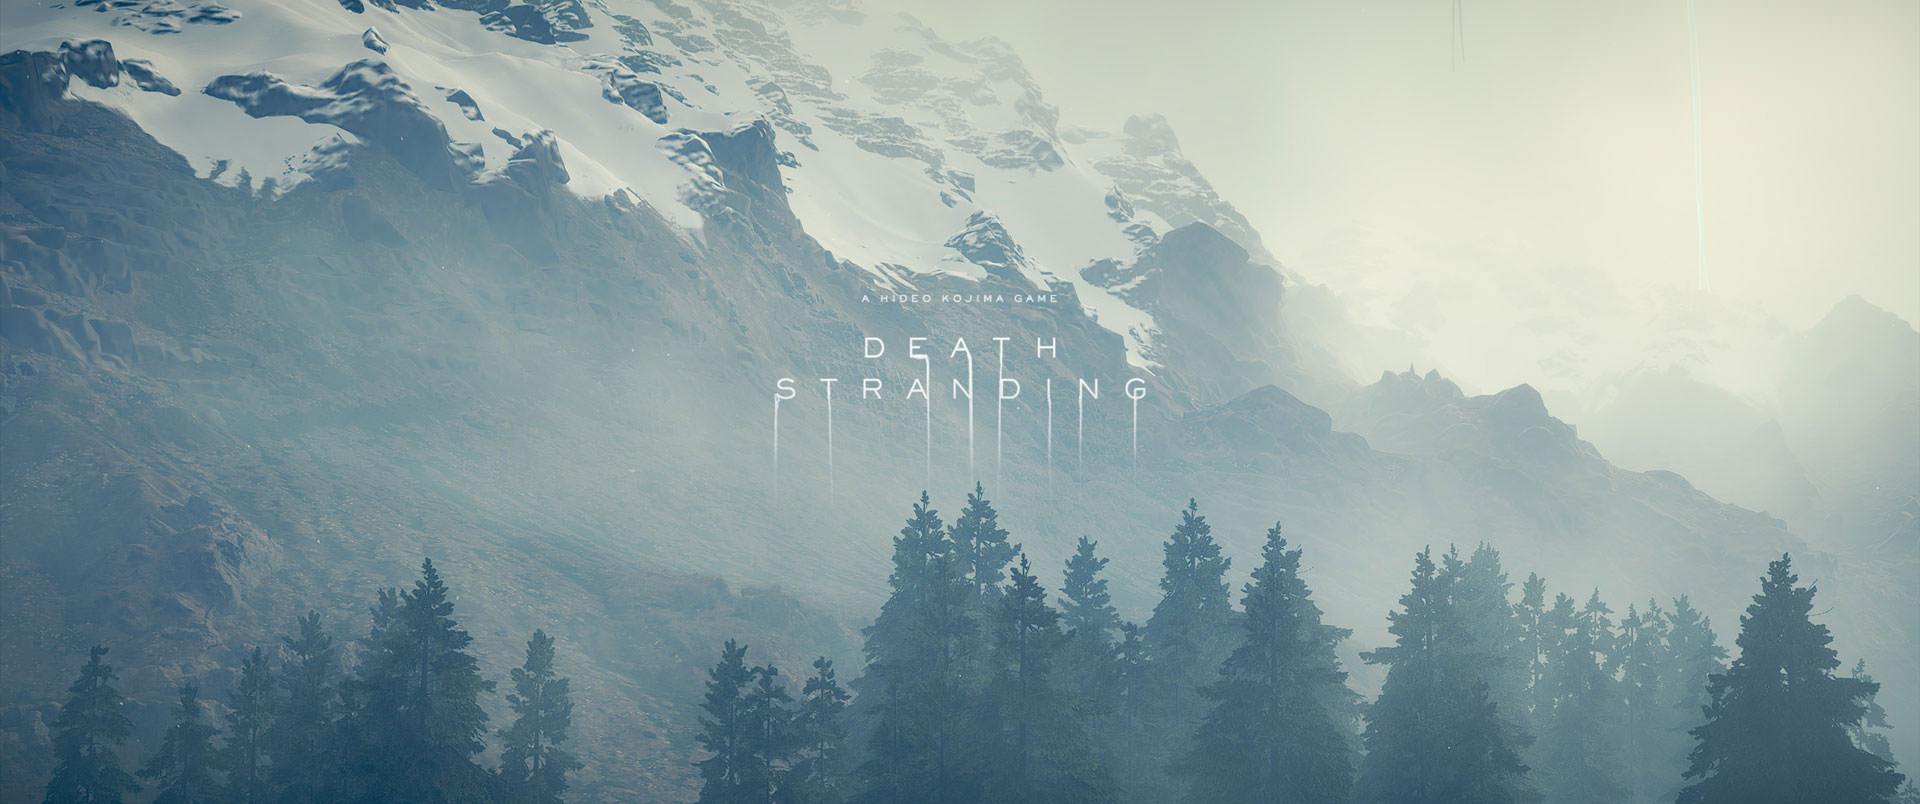 کوه، جنگل و مه غلیظ در بازی دث استرندینگ استودیو کوجیما پروداکشنز